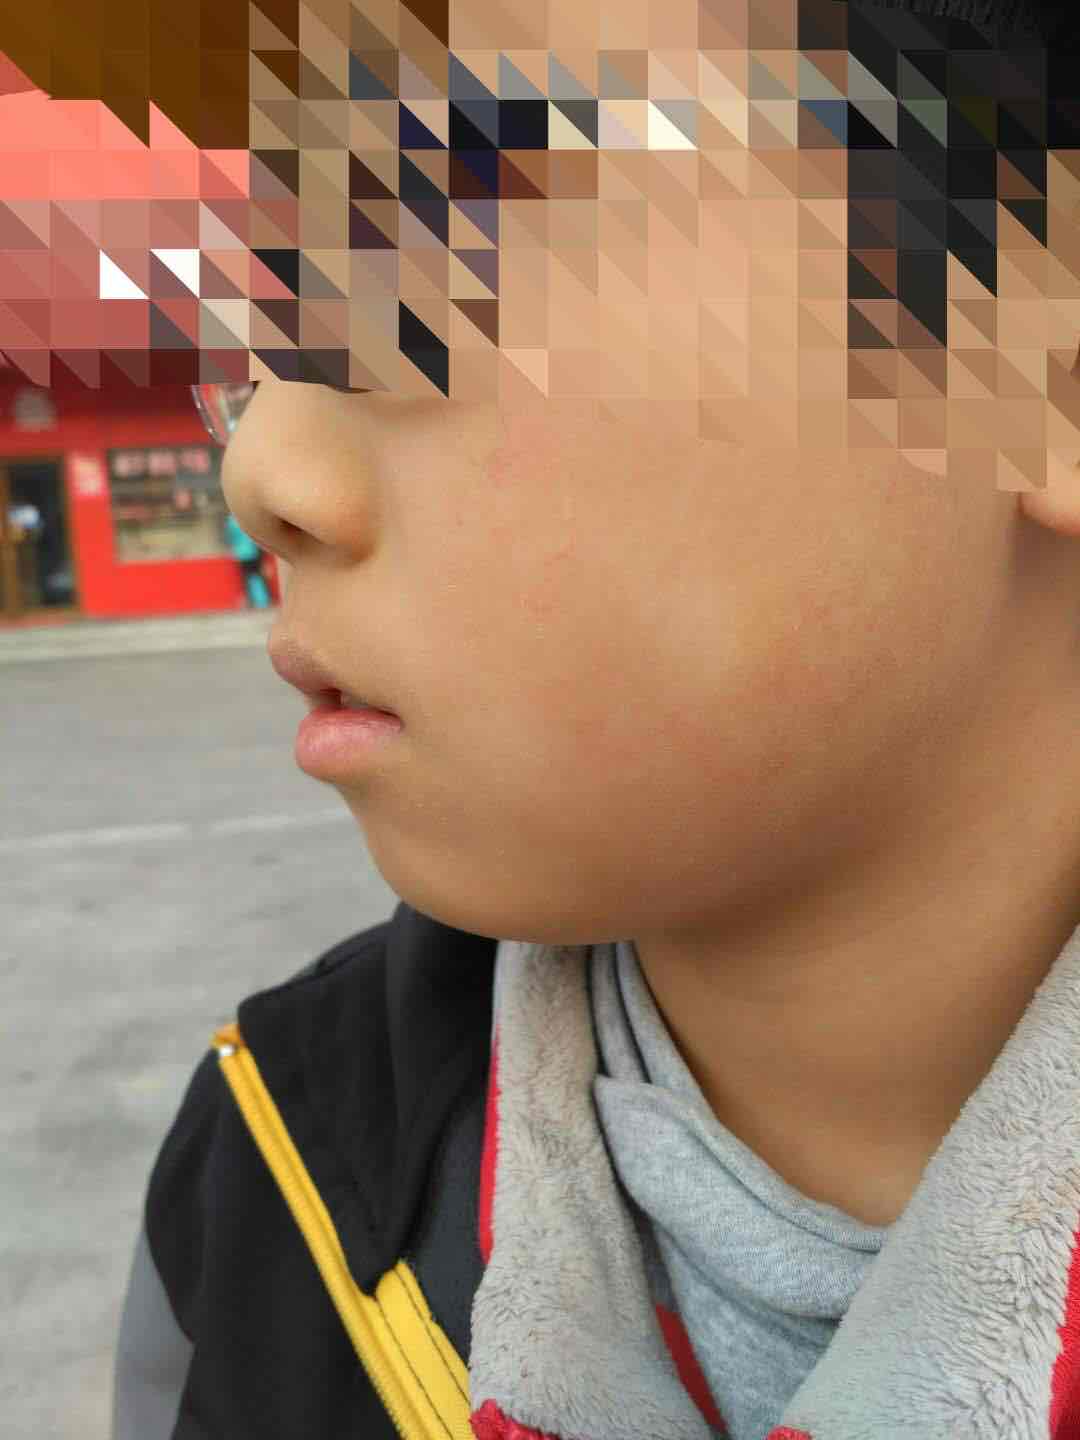 儿童面部的白斑,很多时候是白色糠疹